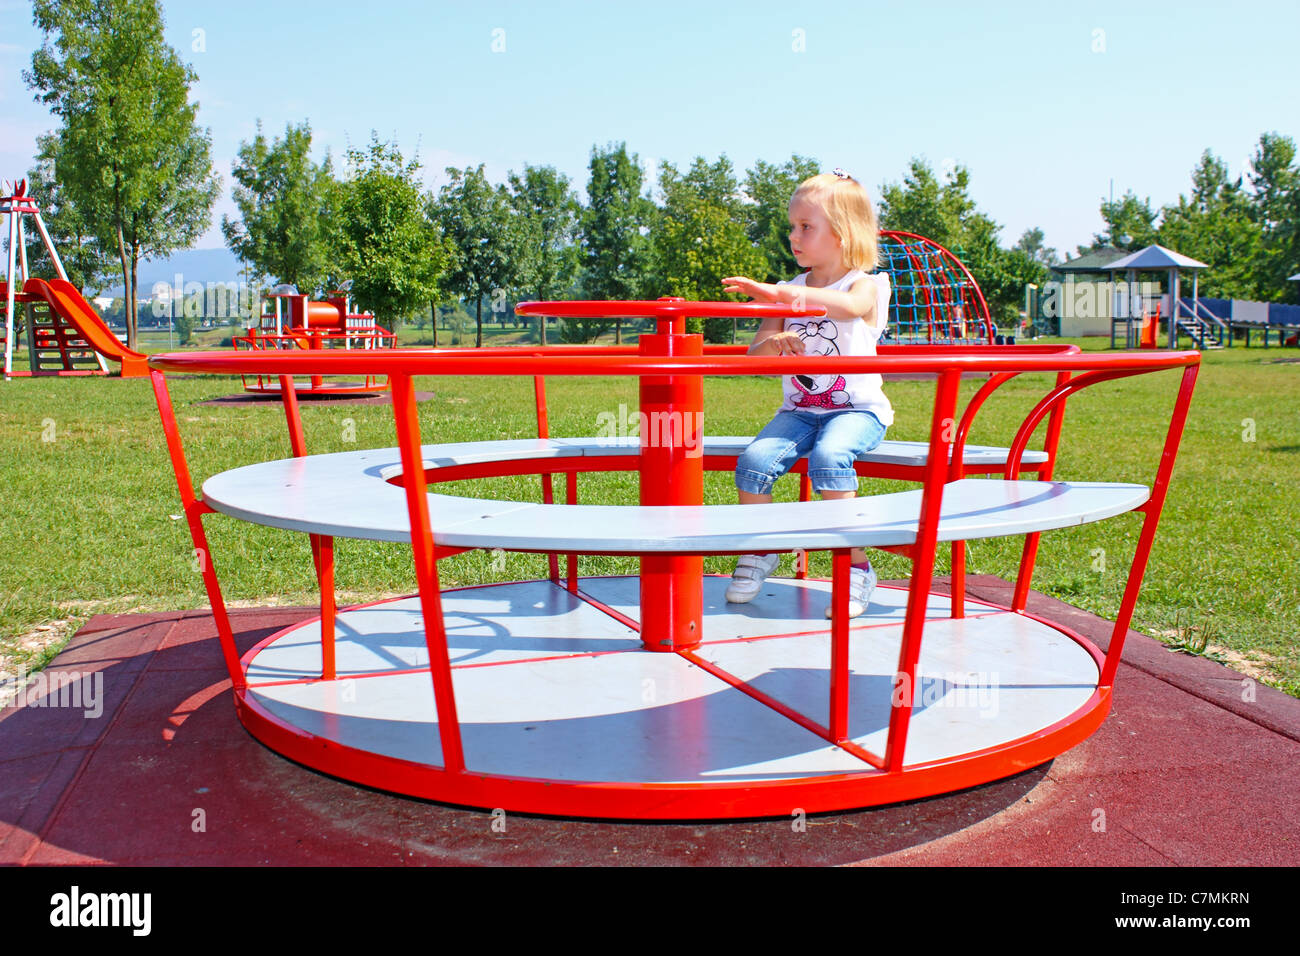 Kleine Mädchen Spielen Auf Das Karussell Spielplatz Stockfotografie Alamy 